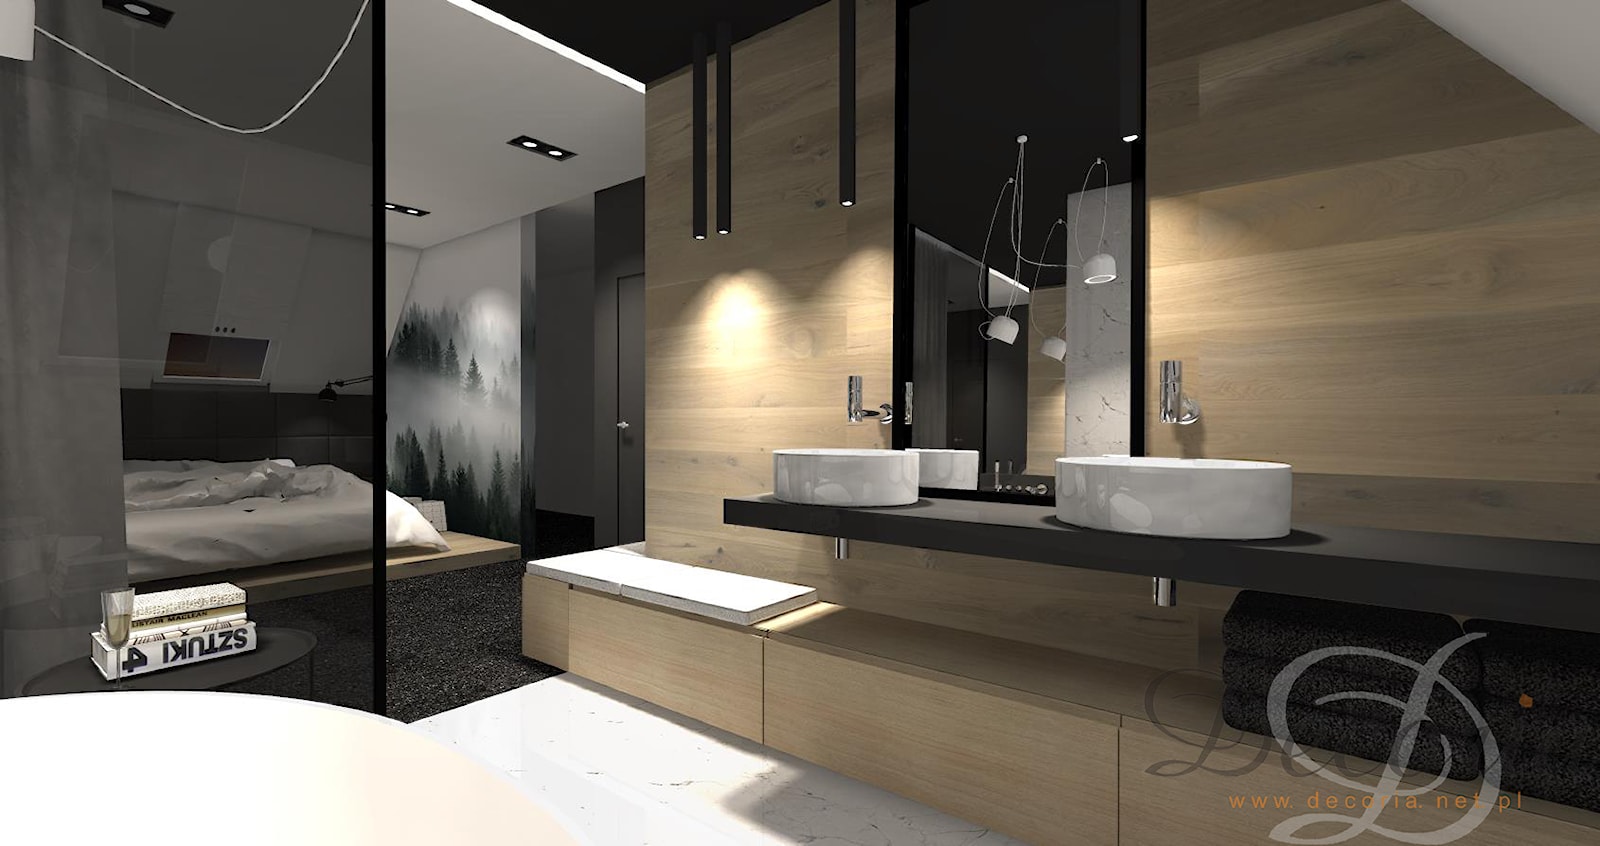 SYPIALNIA - Średnia na poddaszu bez okna z dwoma umywalkami z punktowym oświetleniem łazienka - zdjęcie od Decoria - Homebook